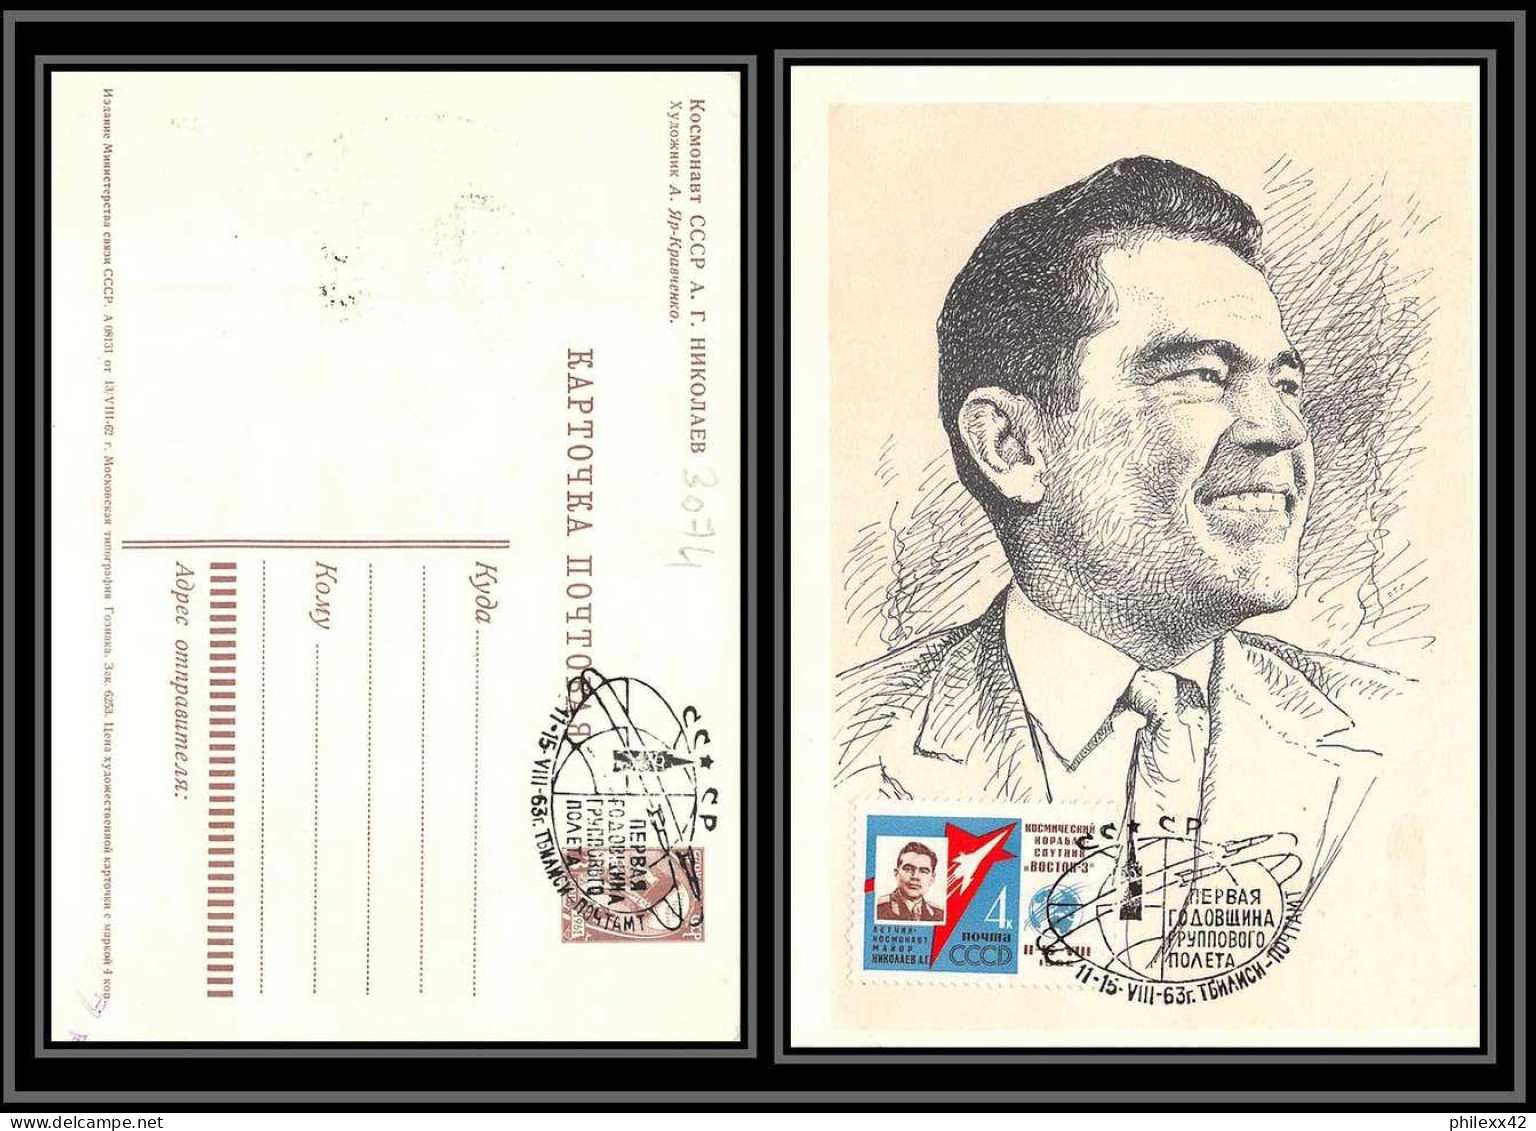 3074 Espace (space) Entier Postal (Stamped Stationery) Russie (Russia) Popovich 11/8/1962 Anniversaire Vol Bostok 4 - UdSSR